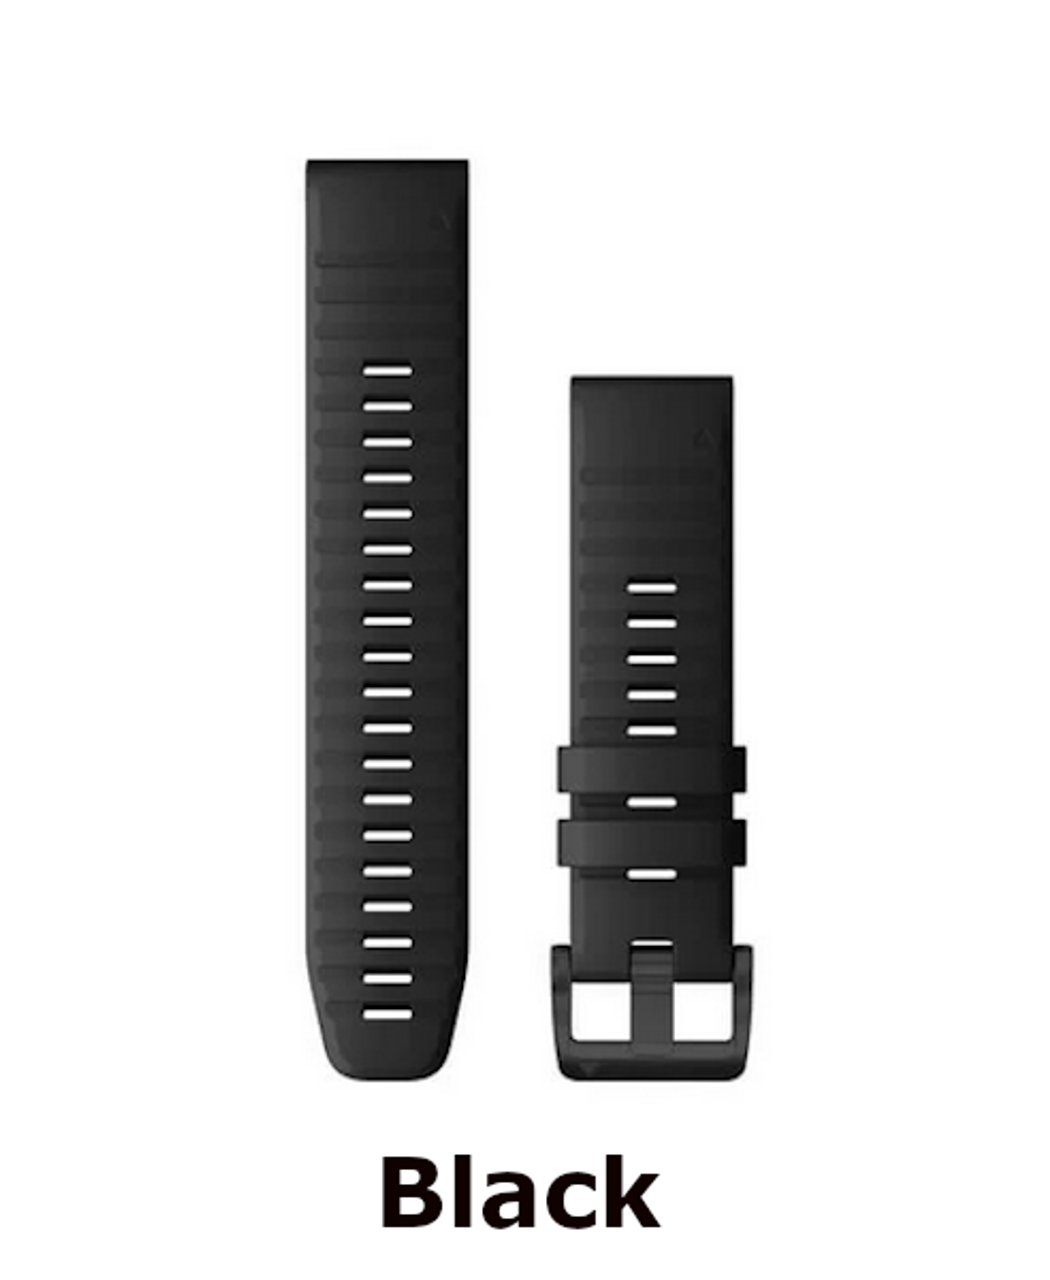 black garmin quickfit 22 smartwatch band - at okie dog supply